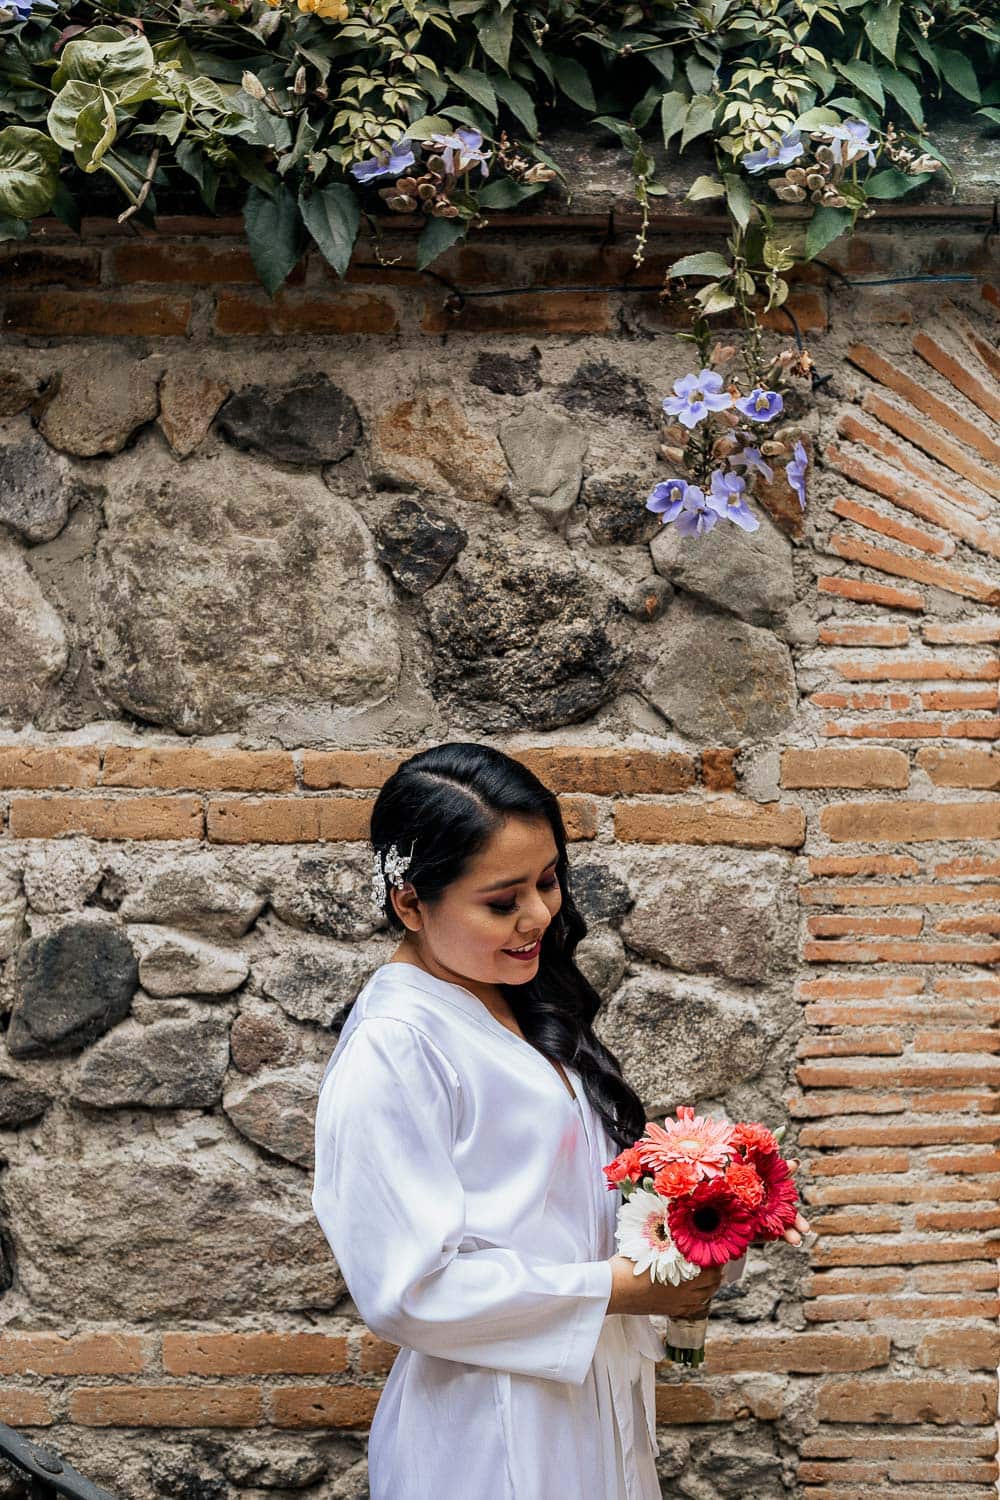 Fotos de boda en Antigua Guatemala